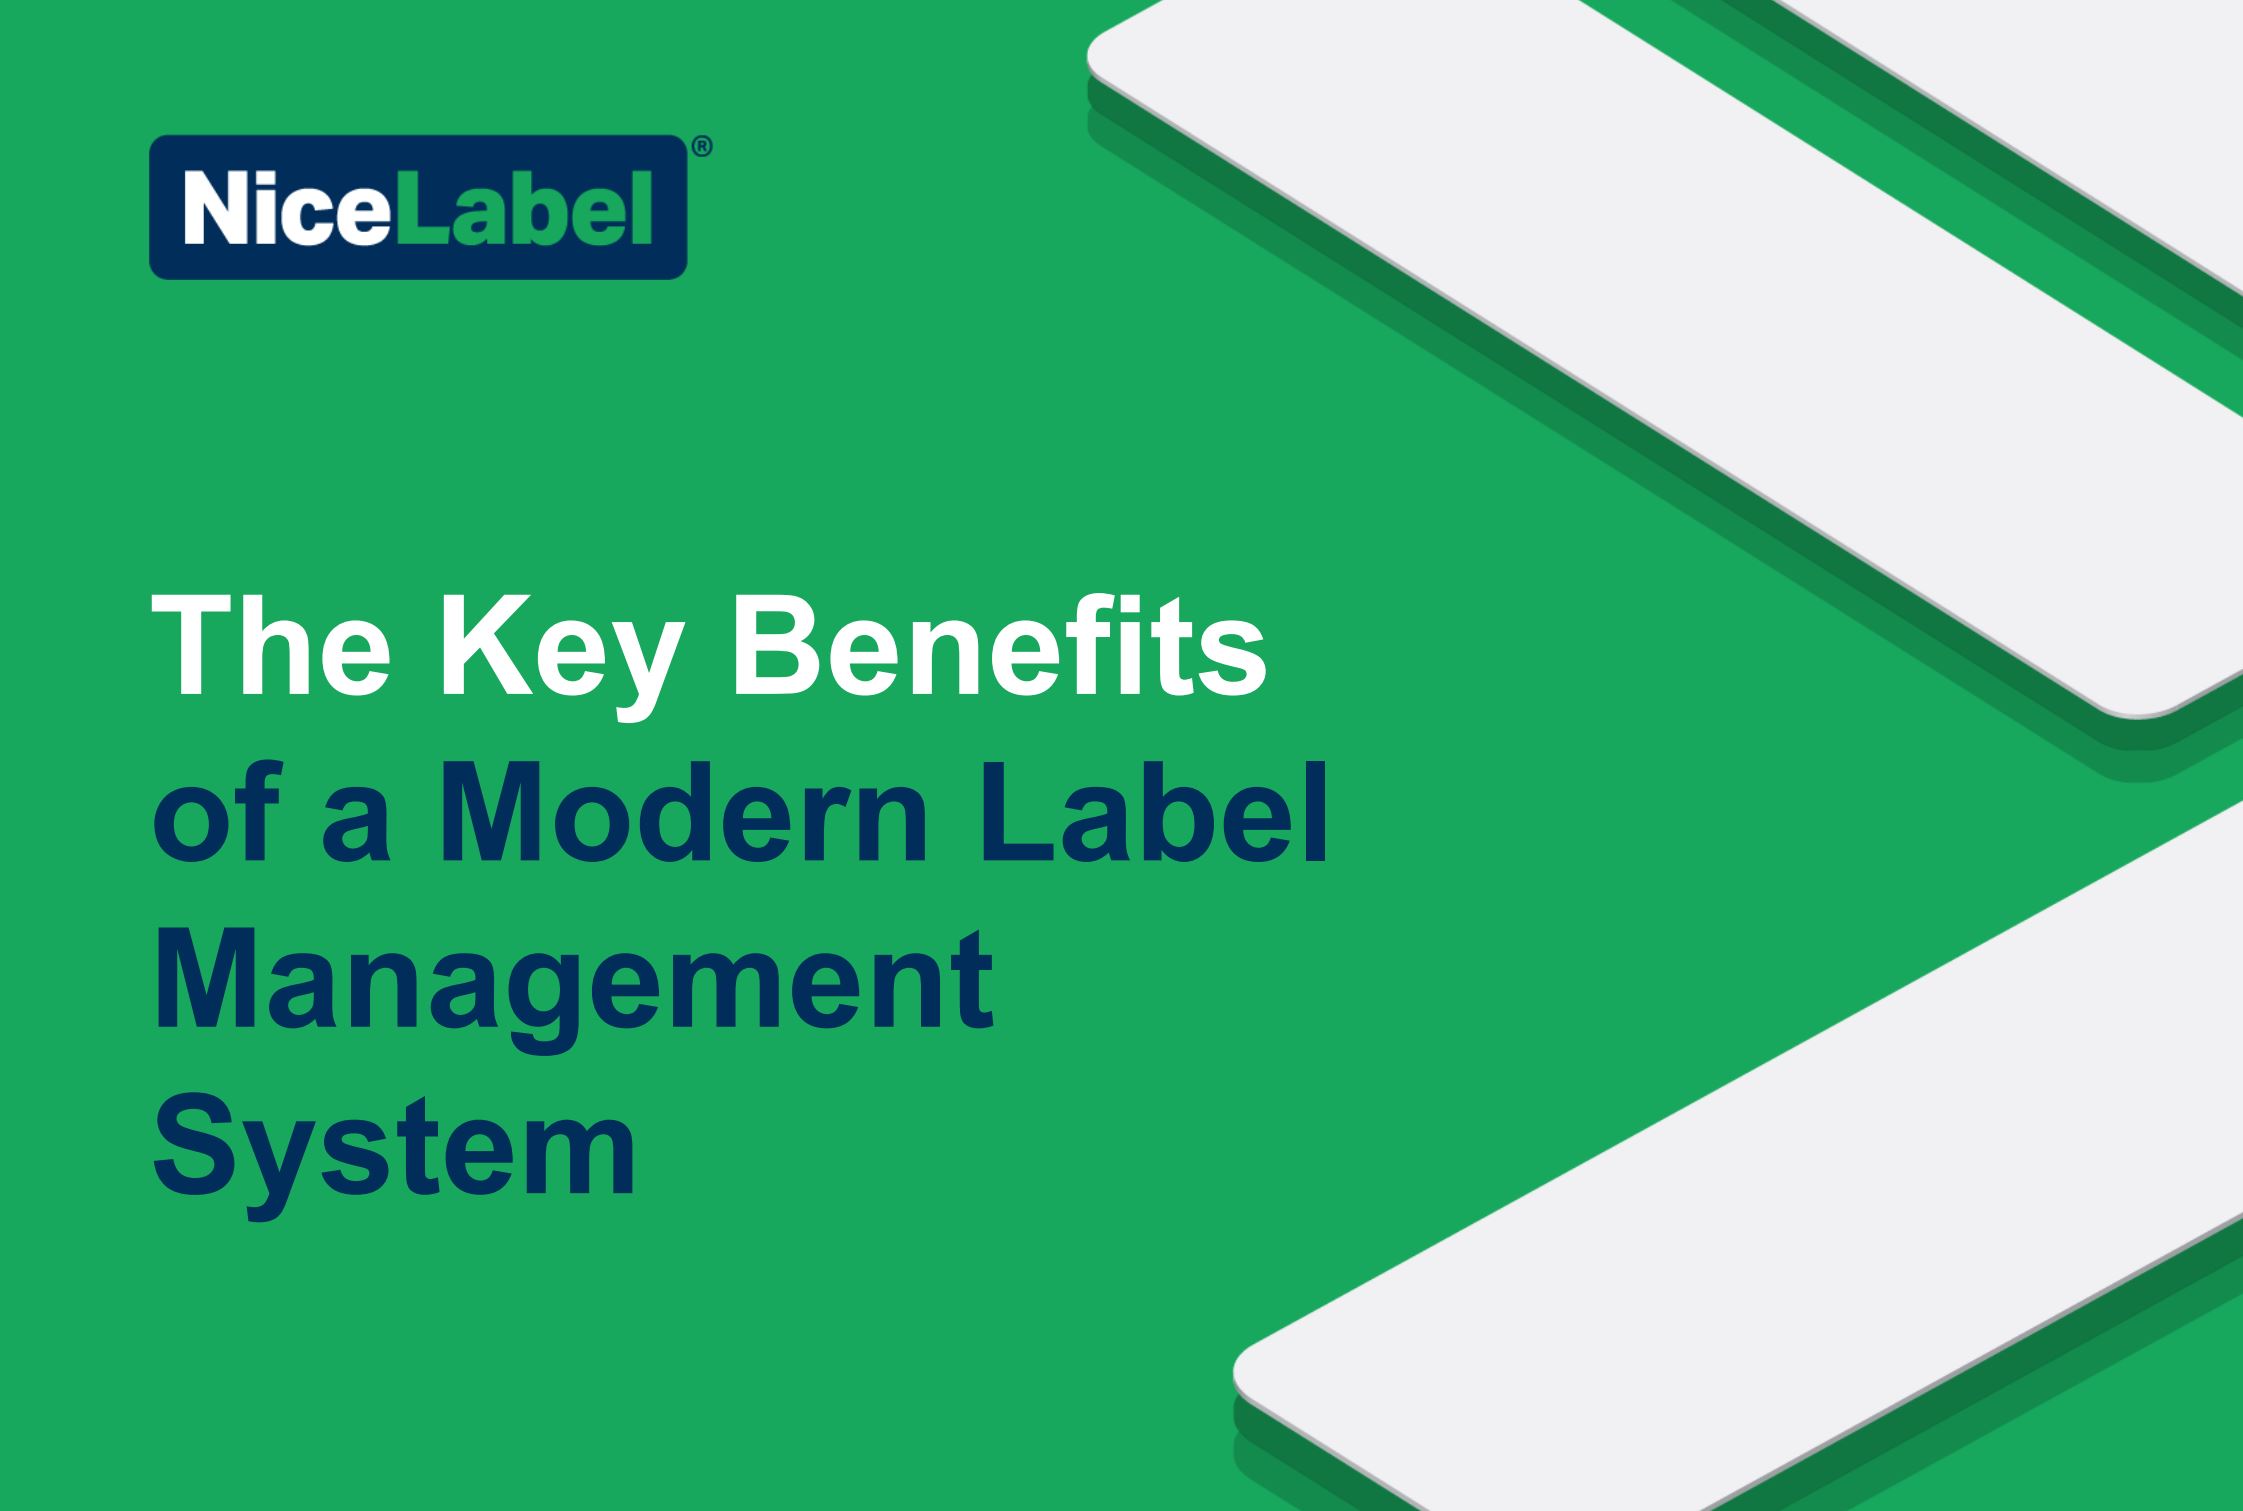 De belangrijkste voordelen van een modern label management systeem voor een efficiënt labeling proces